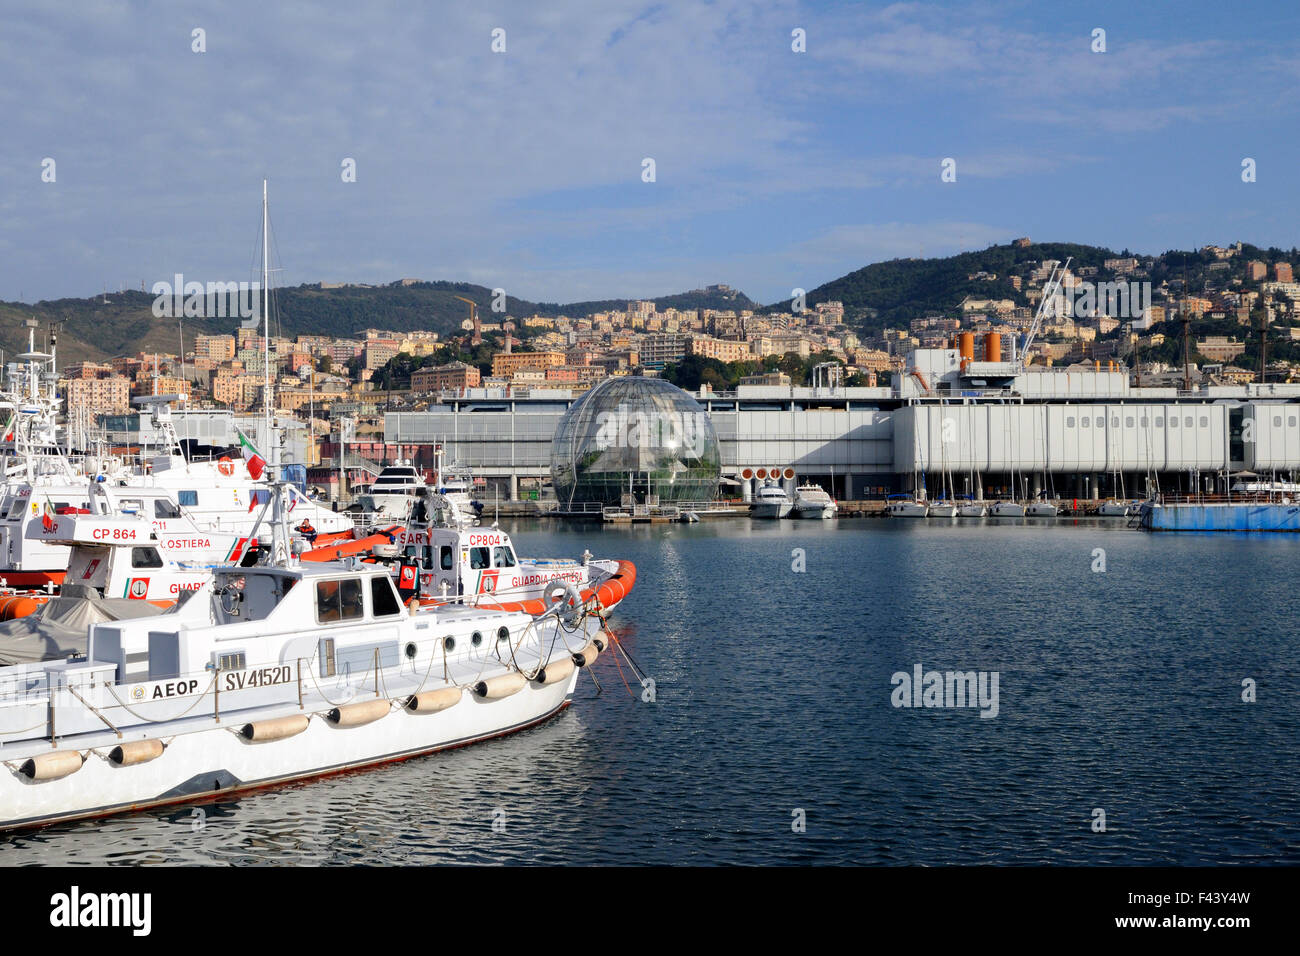 a view on the 'La Bolla' by Renzo Piano, Porto Antico, Genoa, Ligury Stock Photo